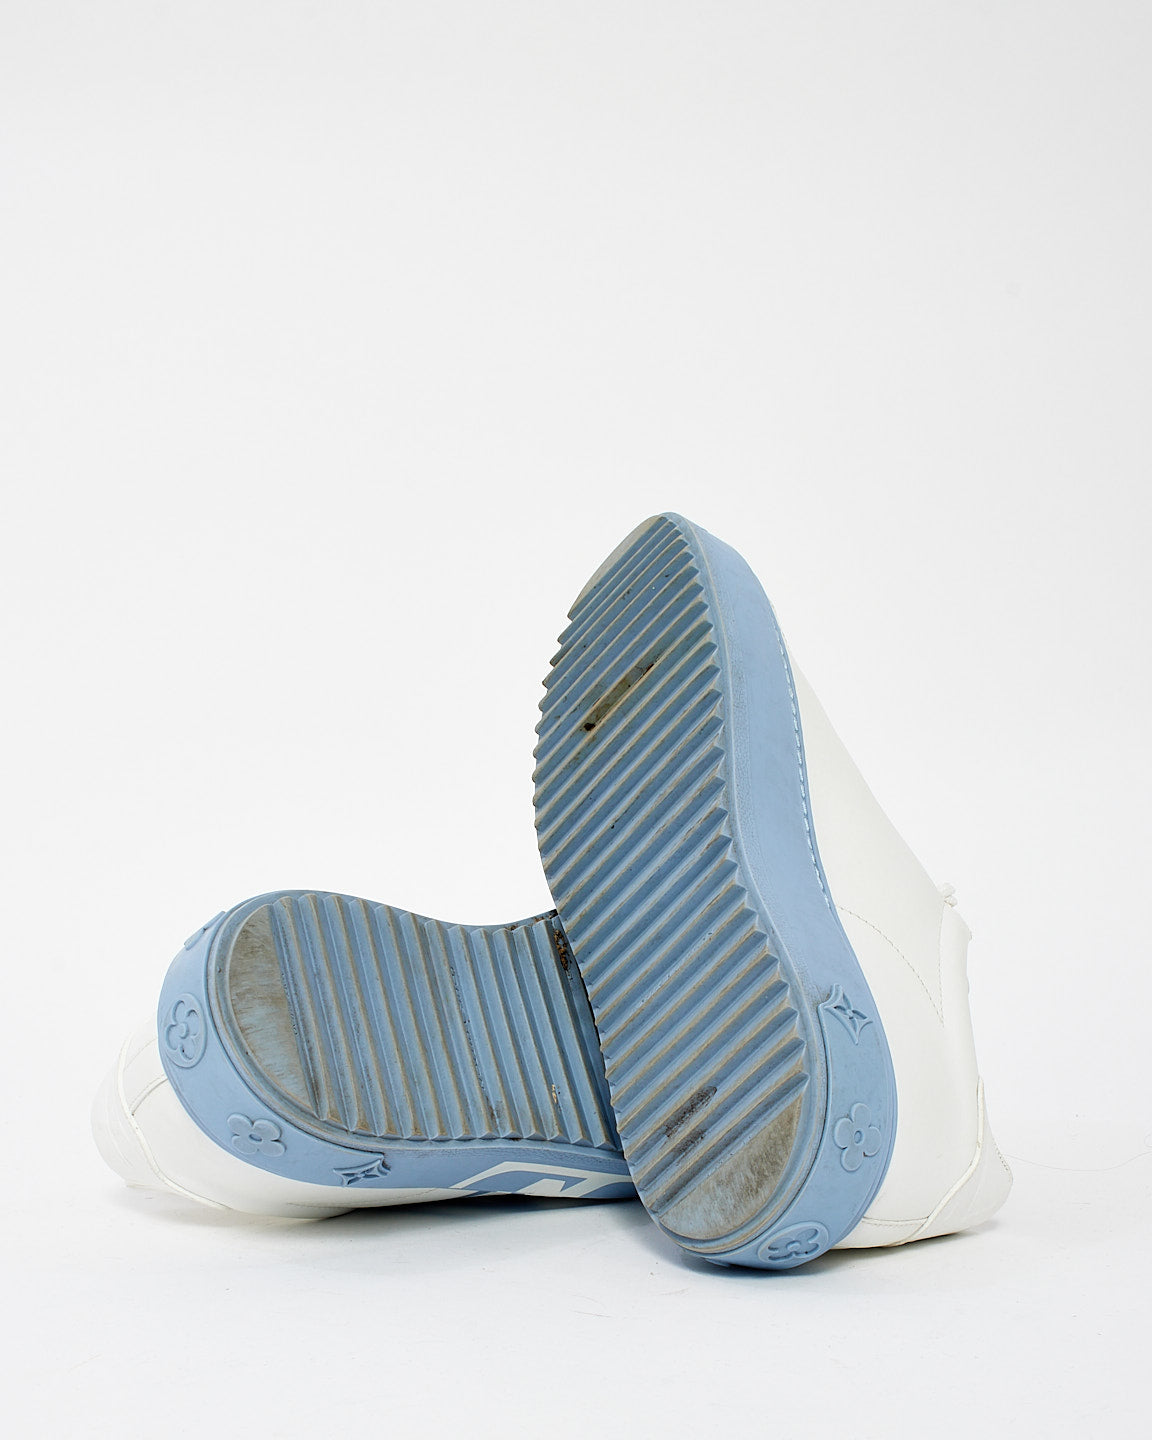 Louis Vuitton Baskets basses Time Out en cuir blanc et bleu - 37,5